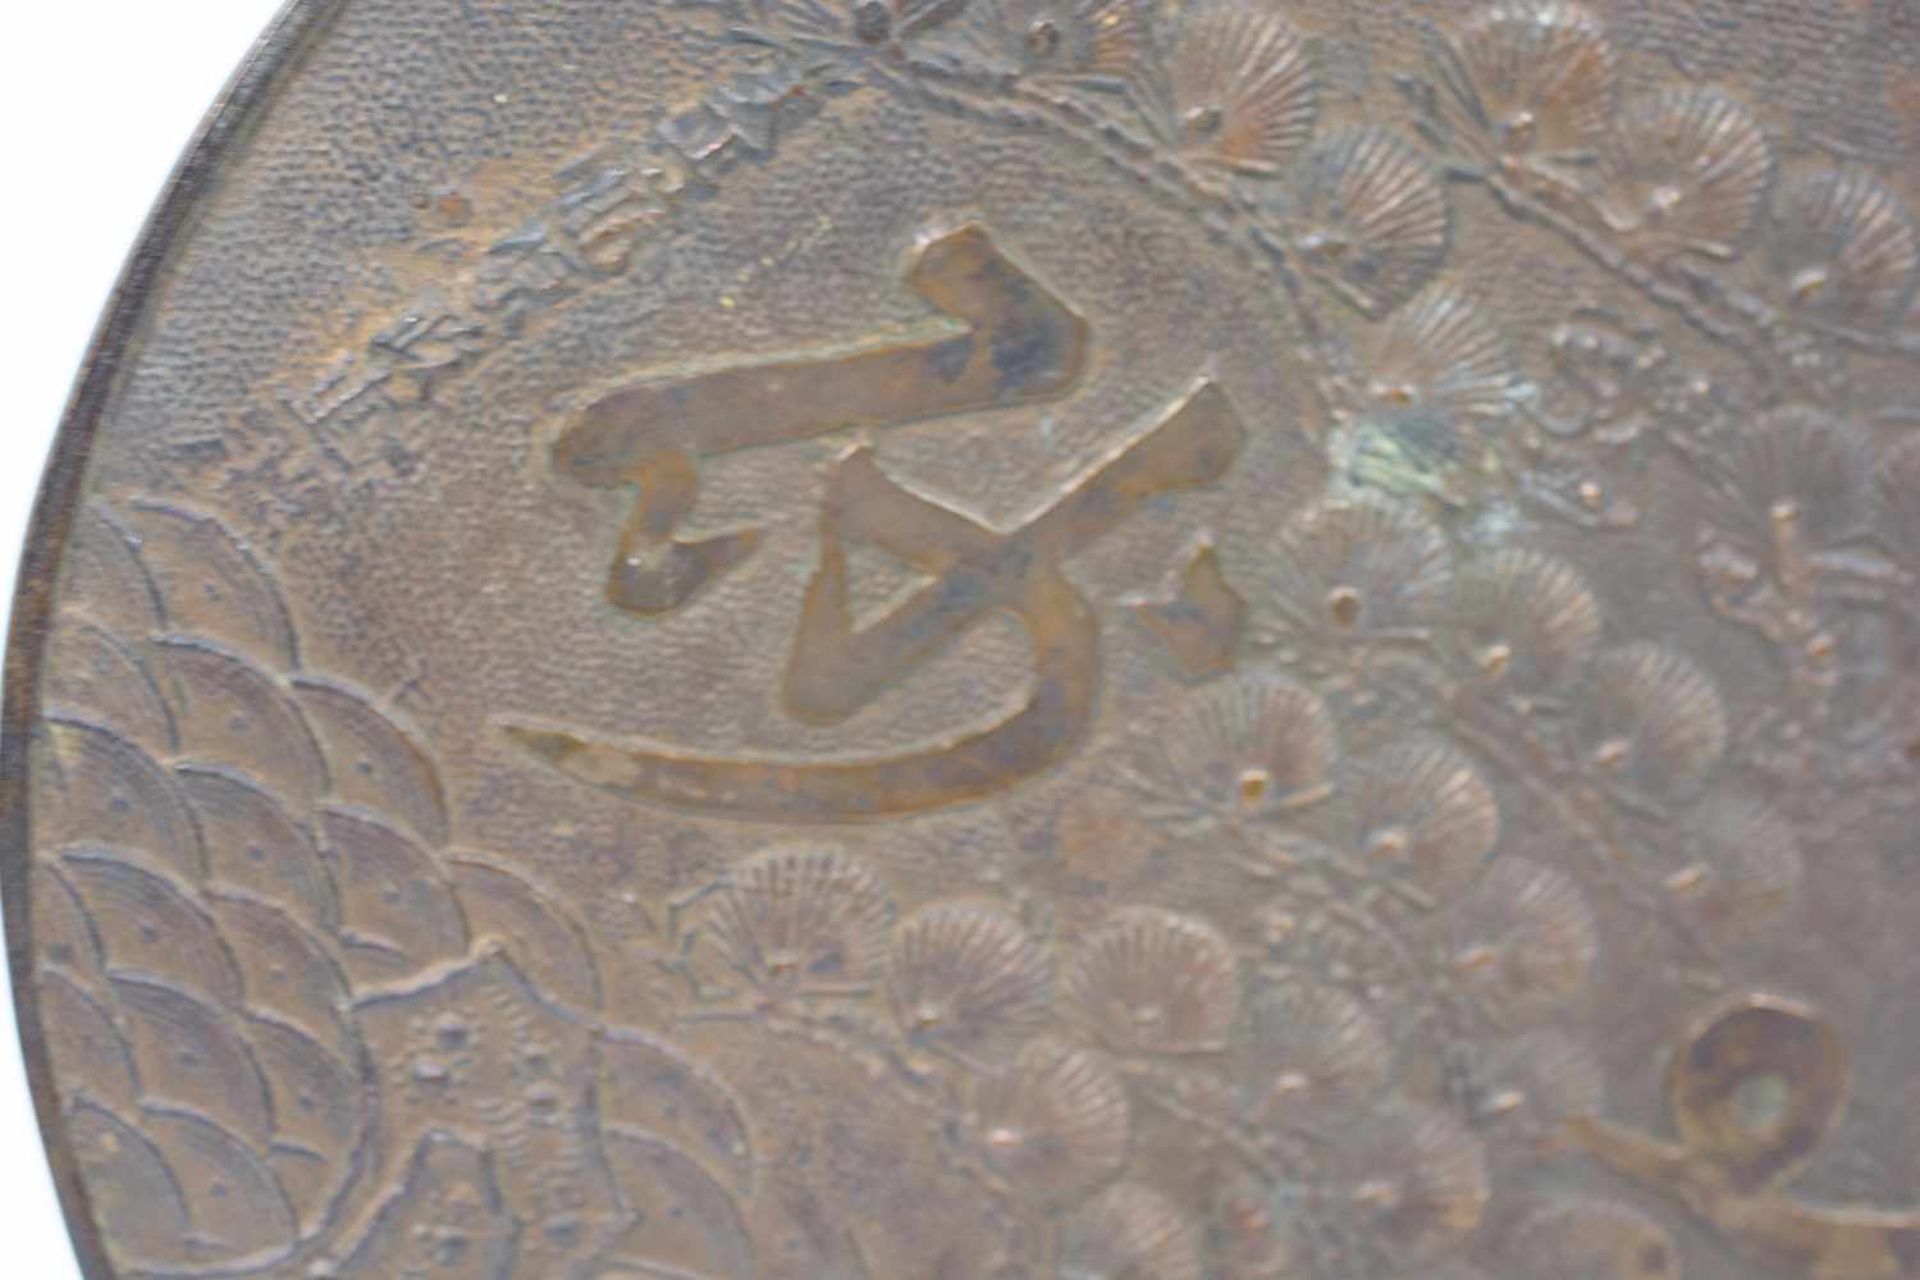 Handspiegel China, 19. Jh., Bronze, Griff mit Weide umsäumt, Länge 29 cm, Ø 20 cm, altersbedingte - Bild 2 aus 2